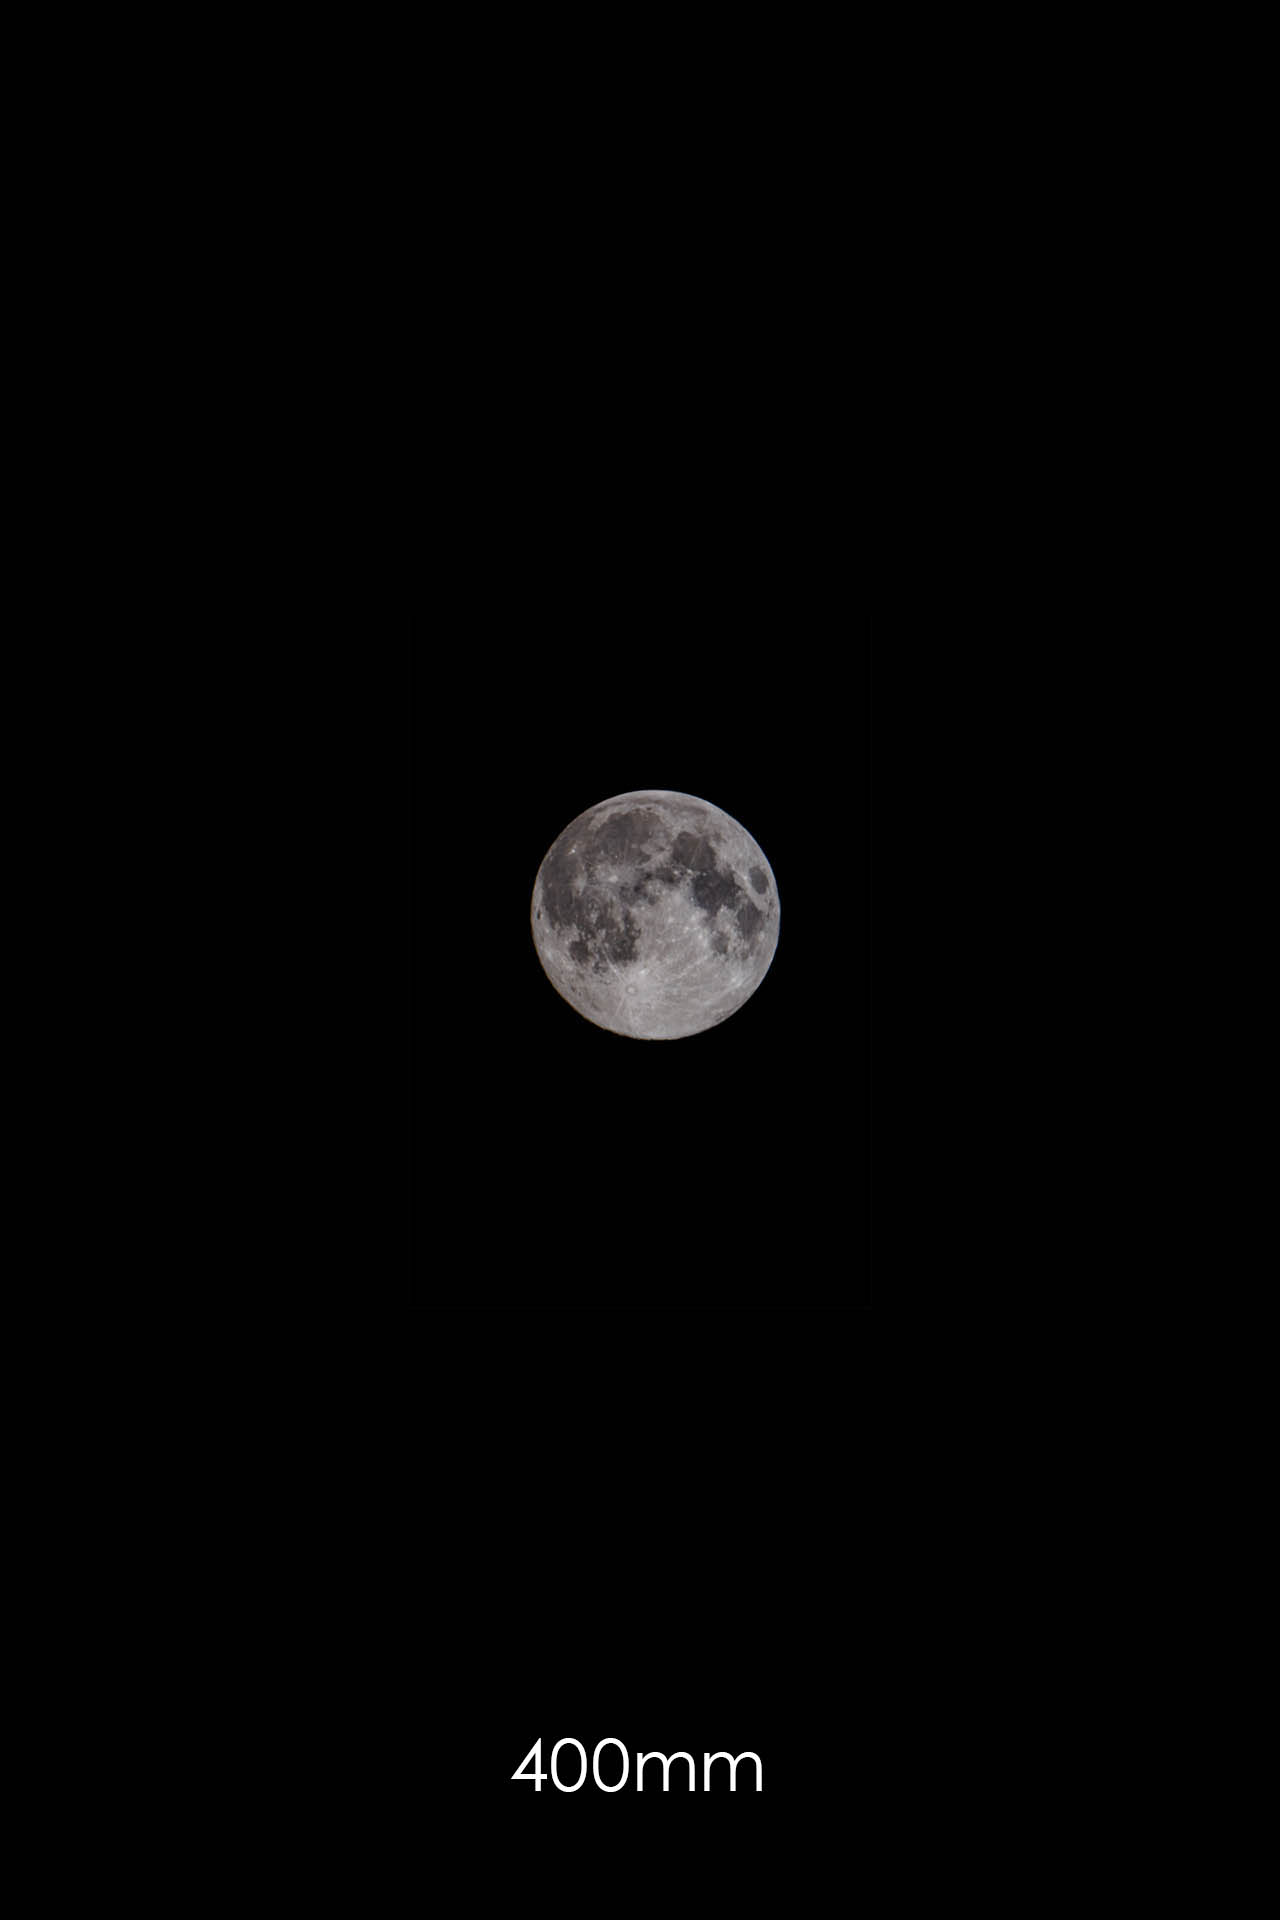 Mond mit 400mm Brennweite fotografiert